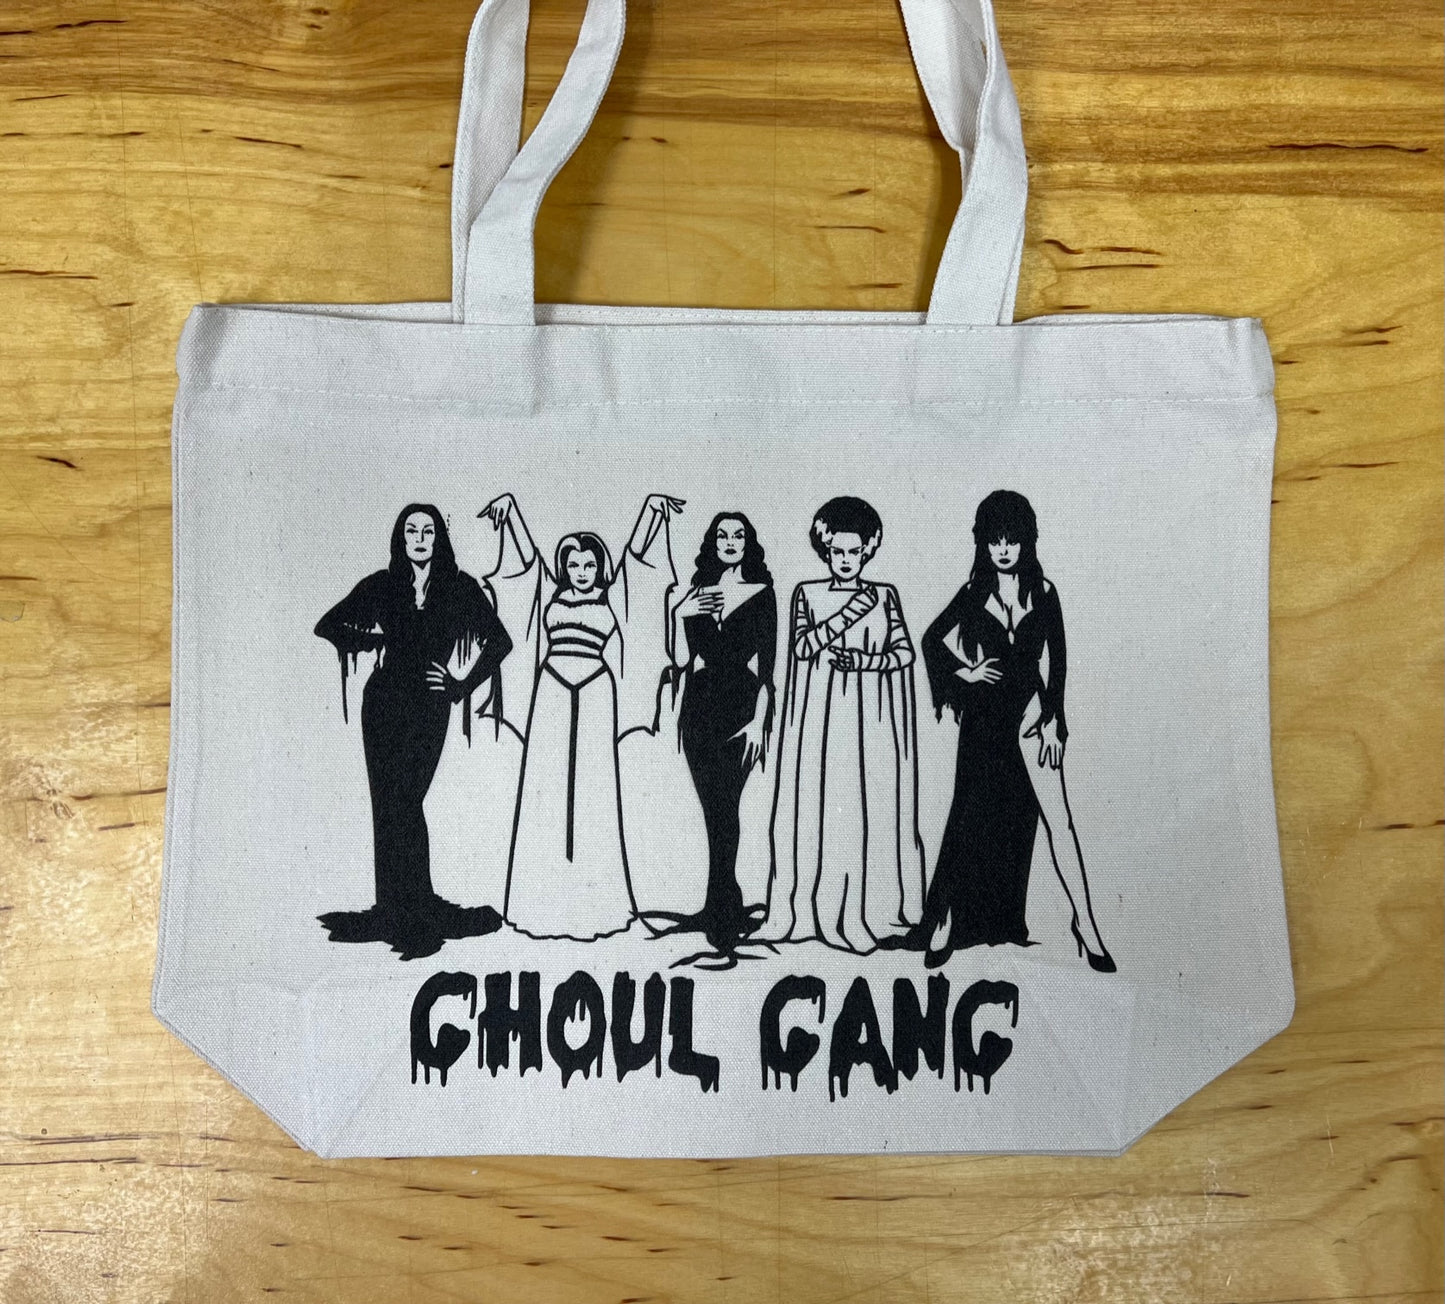 GHOUL GANG Goodie Tote Bag